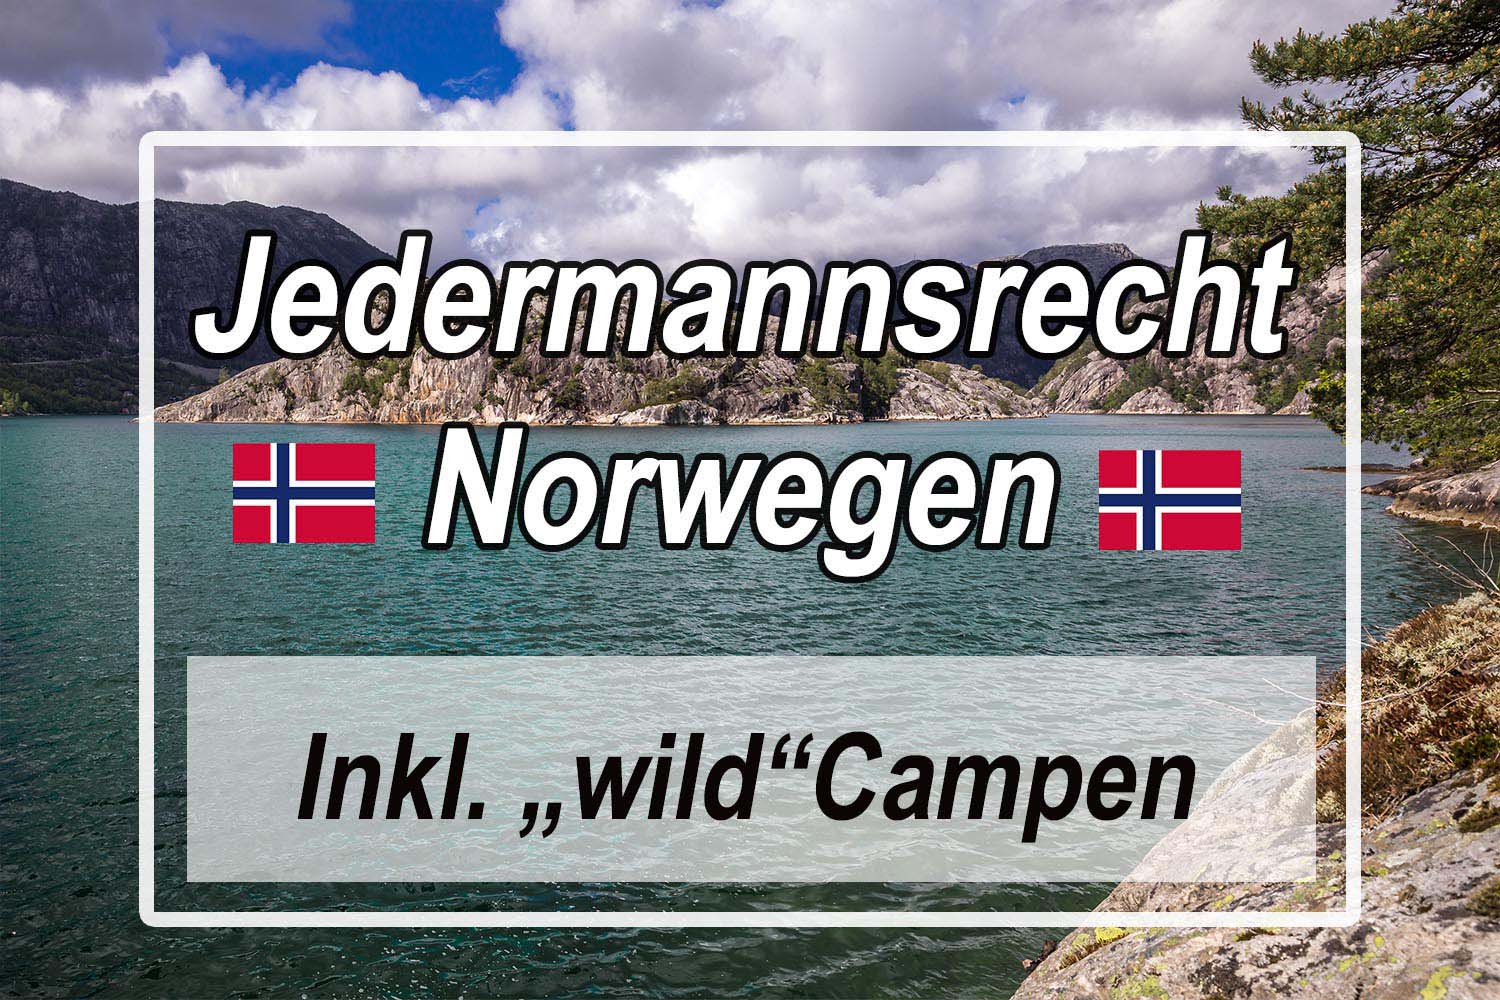 Jedermannsrecht in Norwegen mit Tipps zum wild campen 1